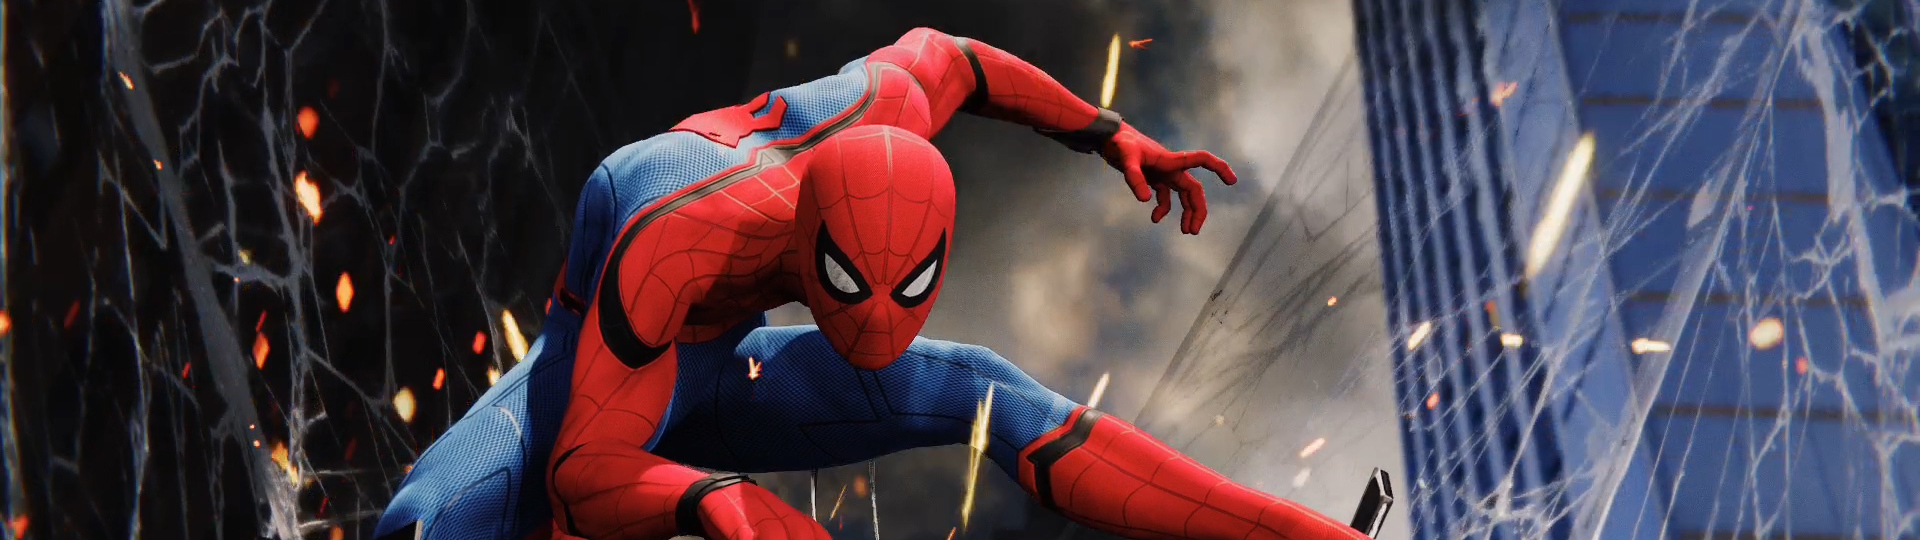 Spider-Man Remastered zřejmě půjde konečně koupit samostatně | Spekulace